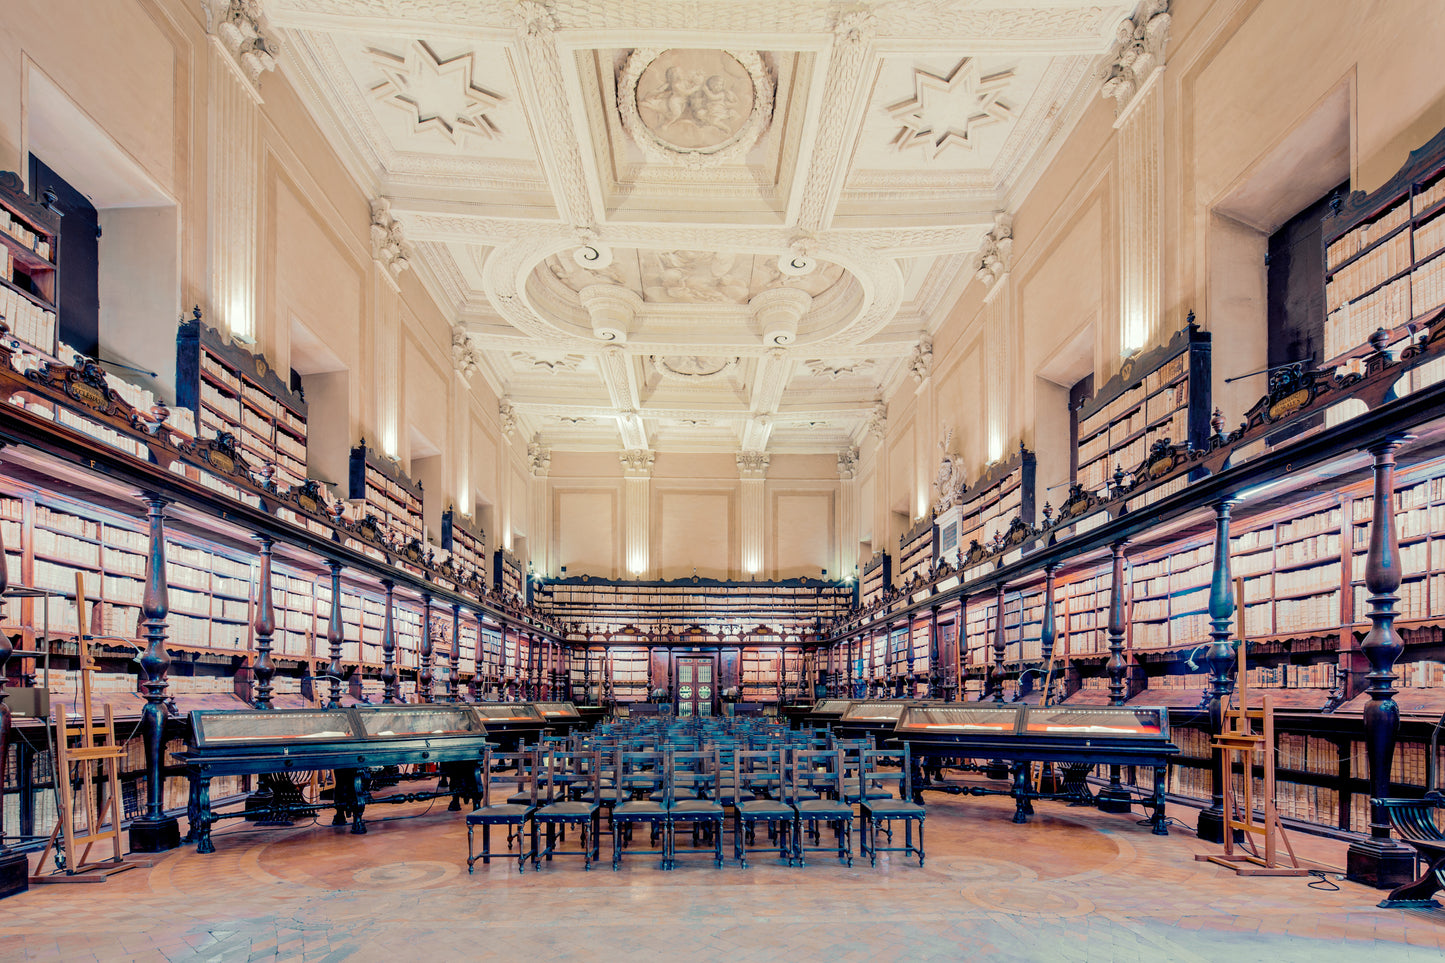 Biblioteca Vallicelliana, Roma, Italy, I